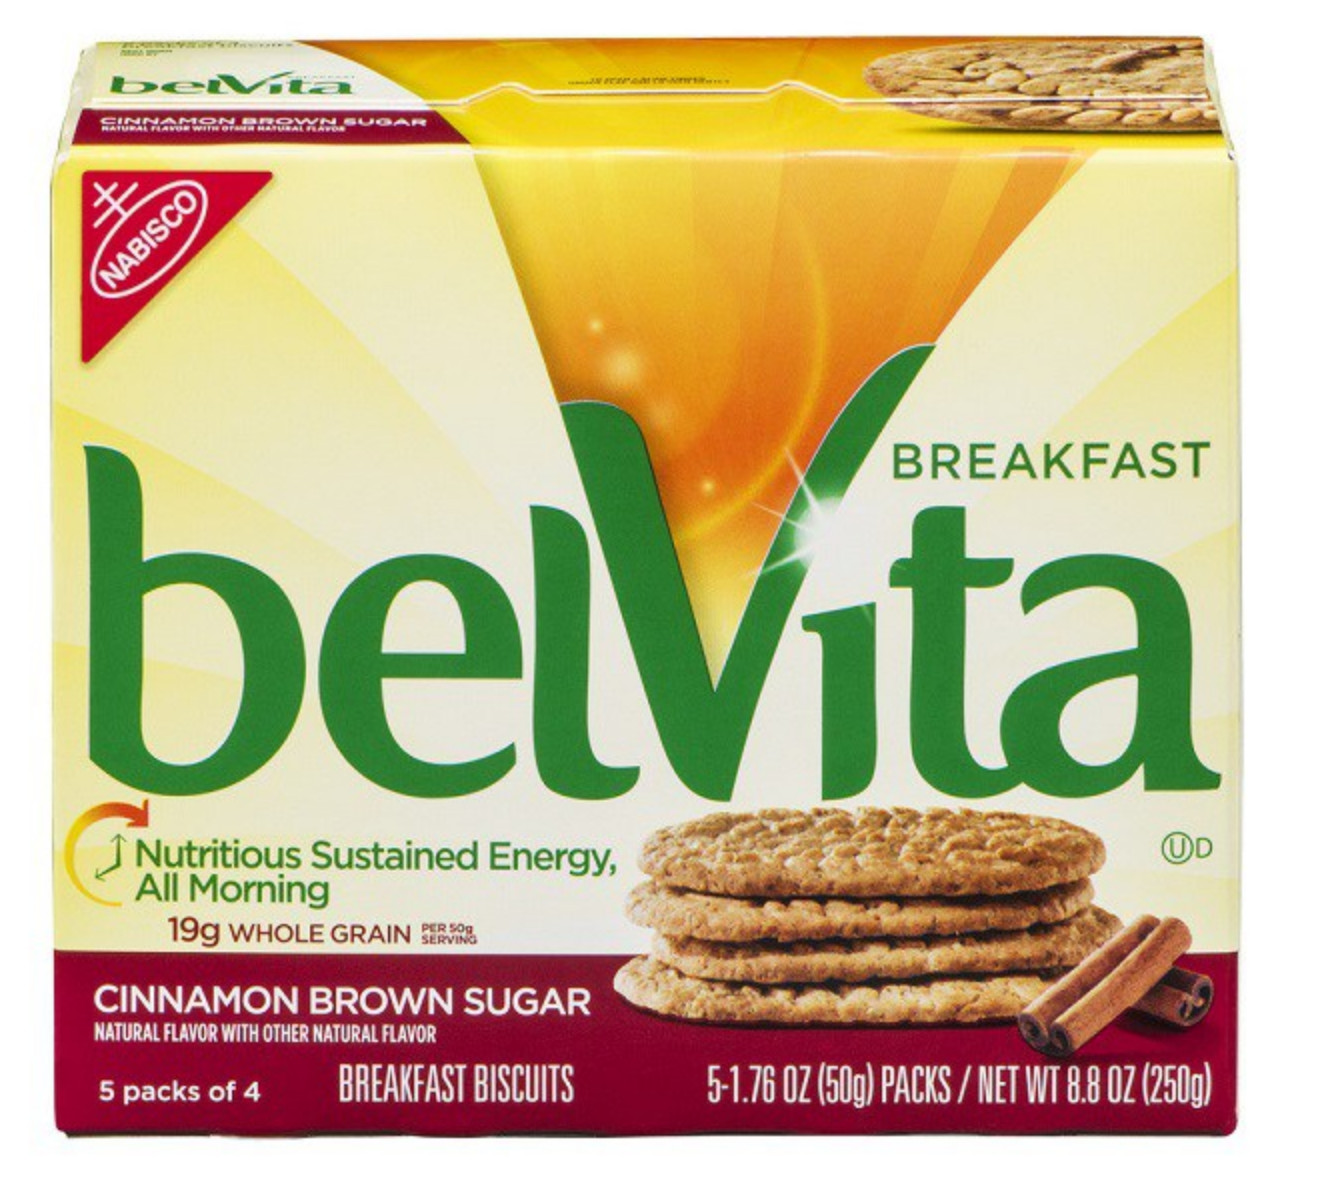 Belvita Breakfast Biscuits Healthy
 belVita Biscuits